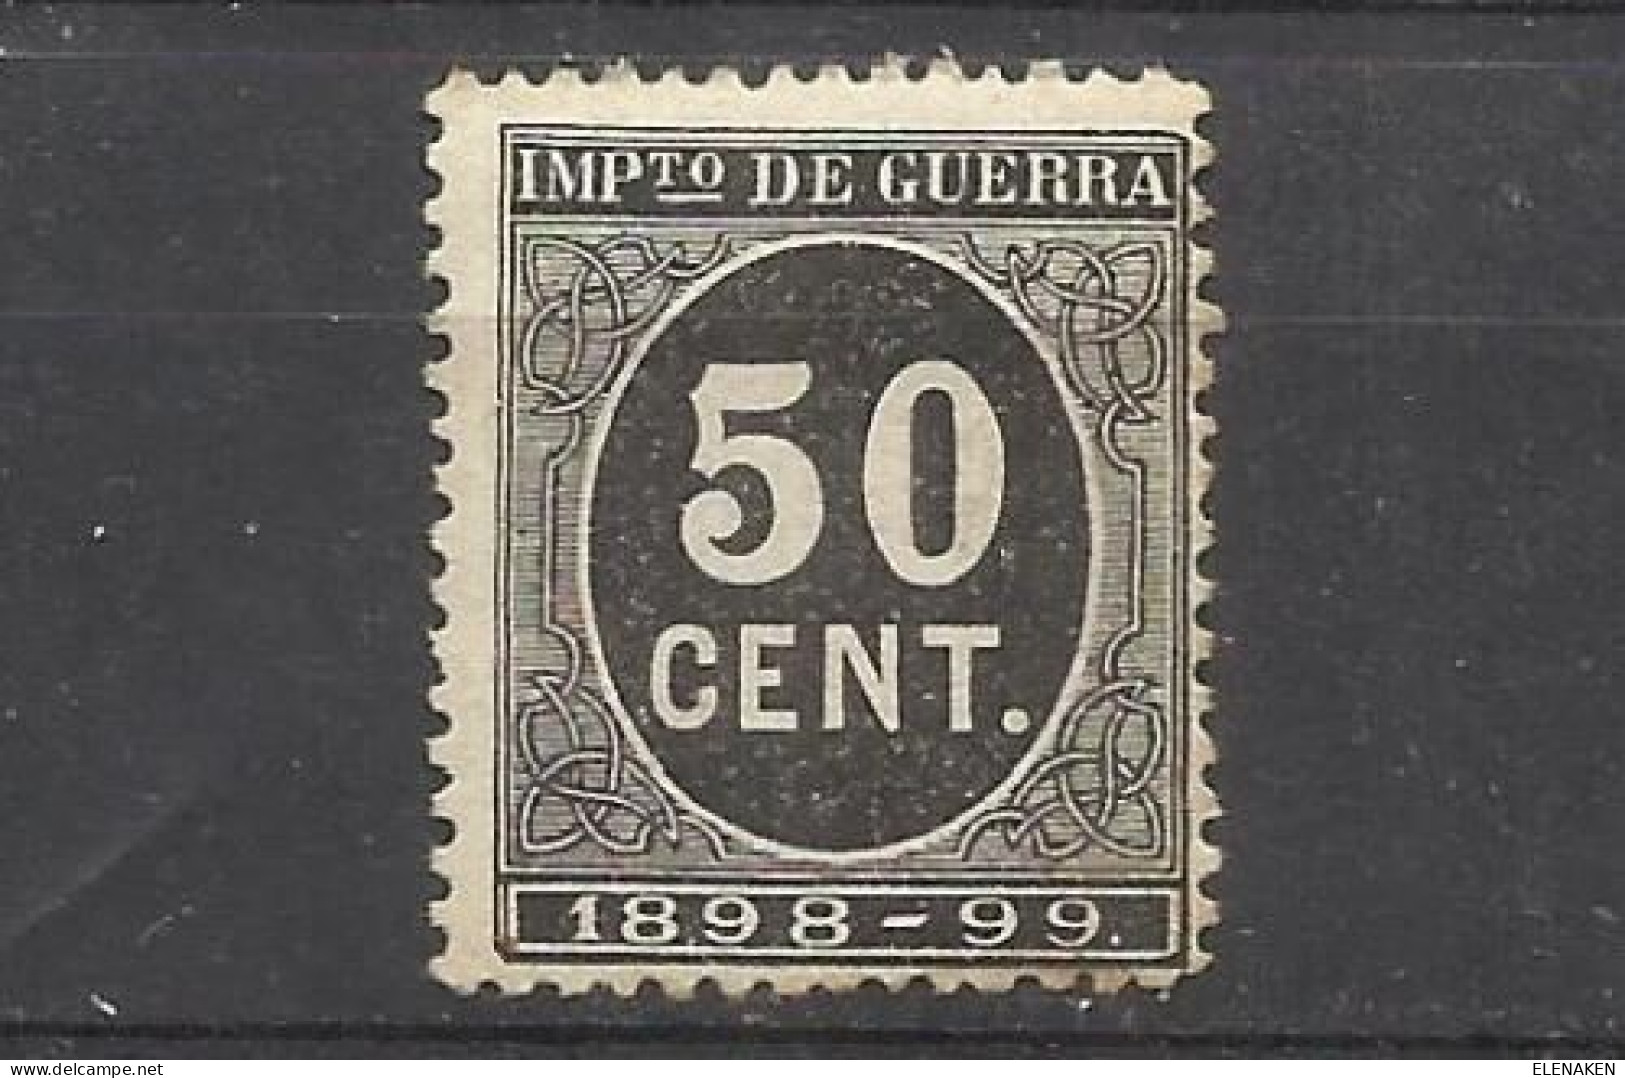 2100B -SELLO IMPUESTO DE GUERRA FISCAL AÑO 1898-1898,PARA SUFRAGAR LAS COSTAS DE LAS GUERRAS EN ULTRAMAR.SPAIN REVENUE - War Tax